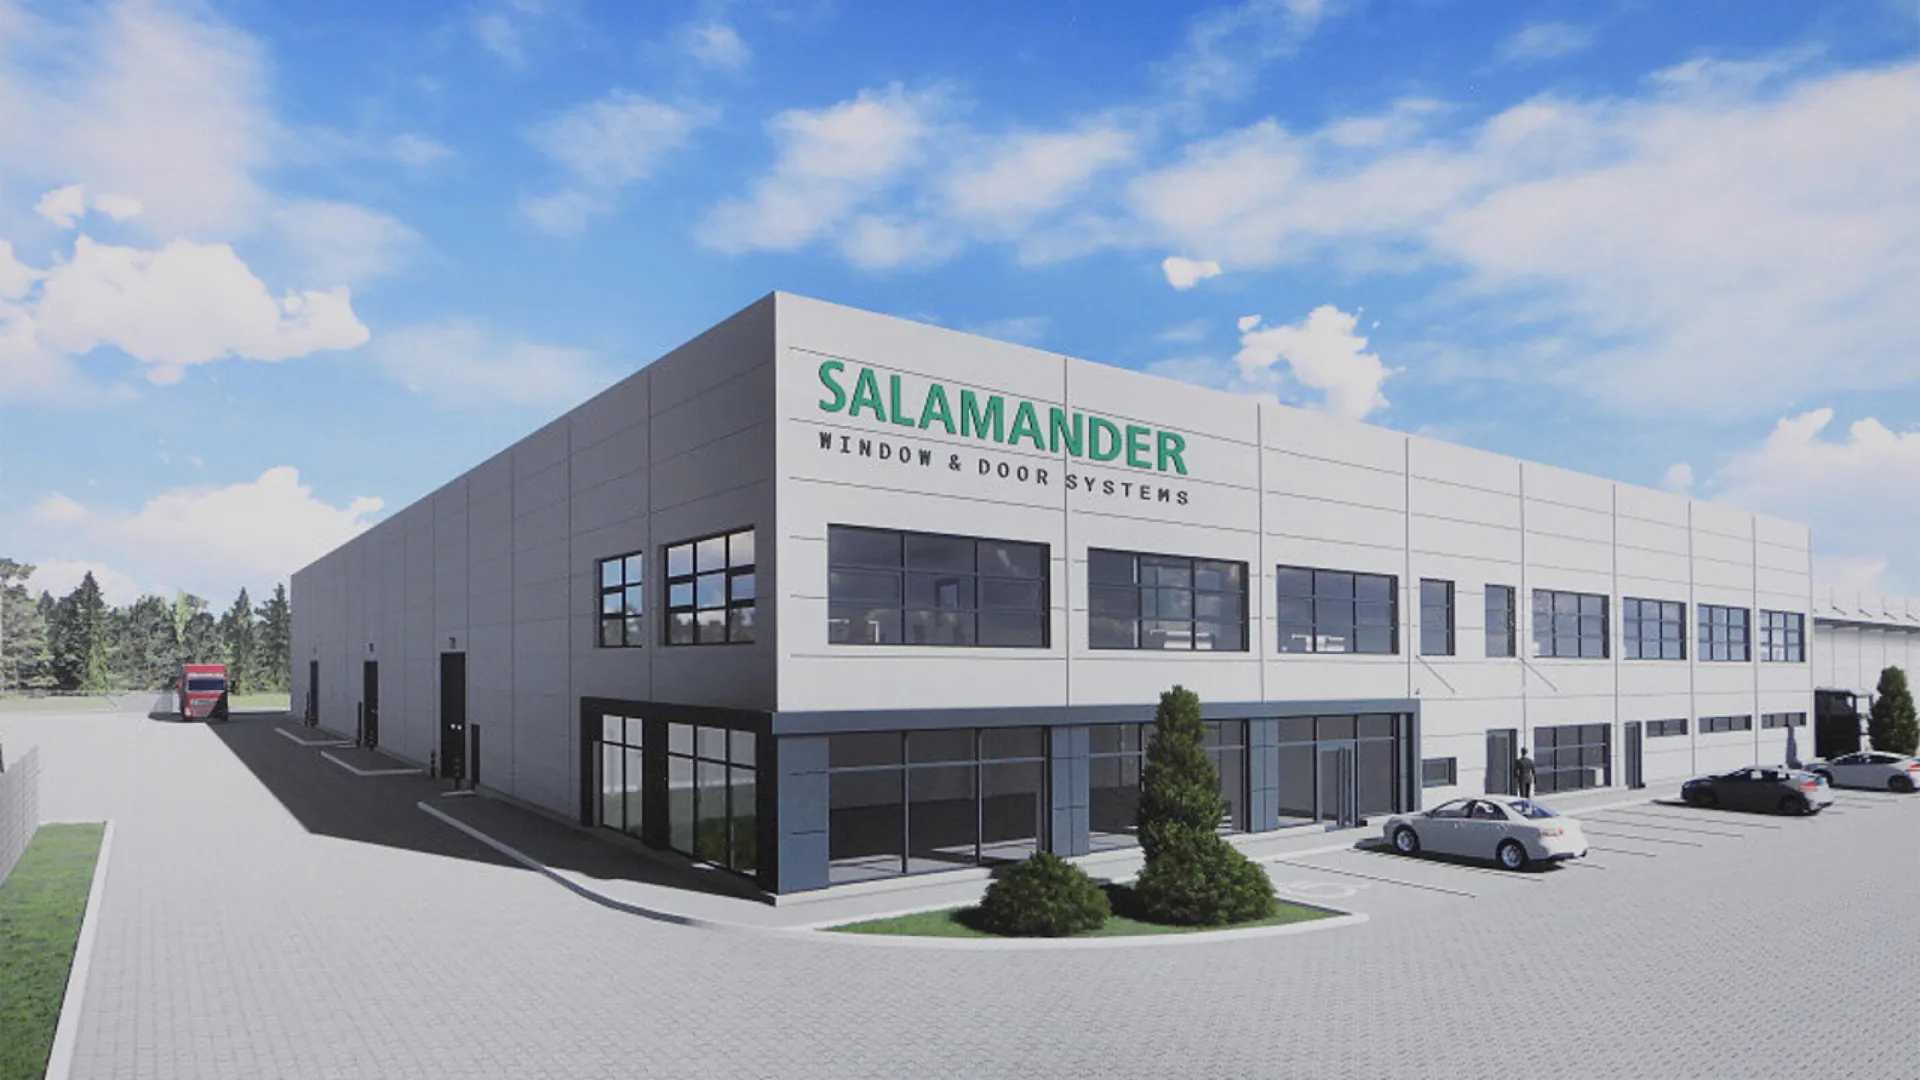 Projekt rozbudowy zakładu produkcyjnego, Włocławek Salamander Window & Door Systems, wizualizacja